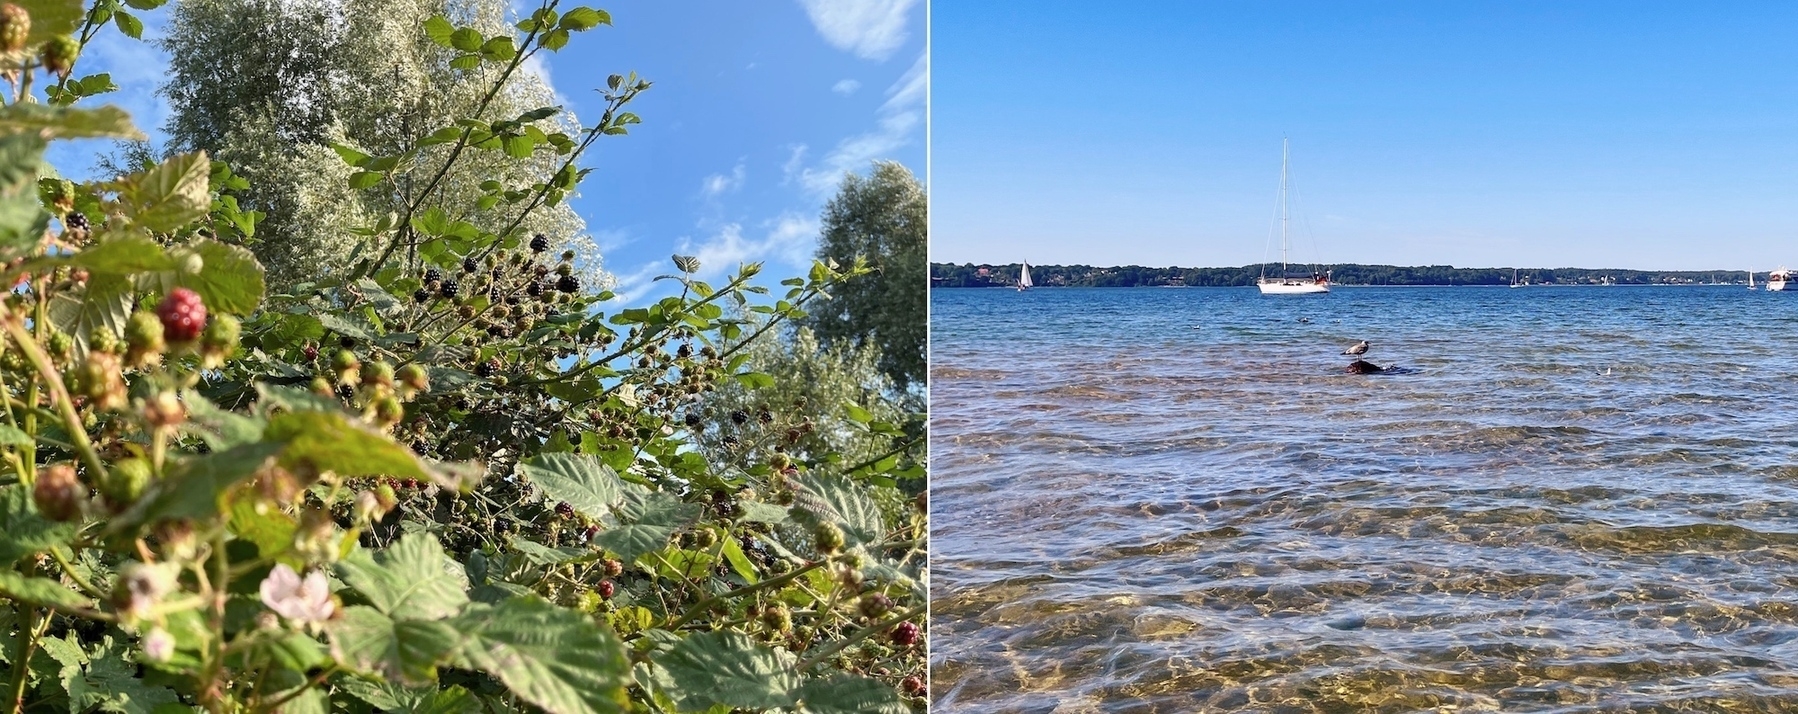 Foto-Kollage: links ein voller Brombeerbusch; rechts Blick über die Flensburger Förde mit einer Möwe auf einem Stein, dahinter ein Segelboot, in der Ferne die dänische Küste